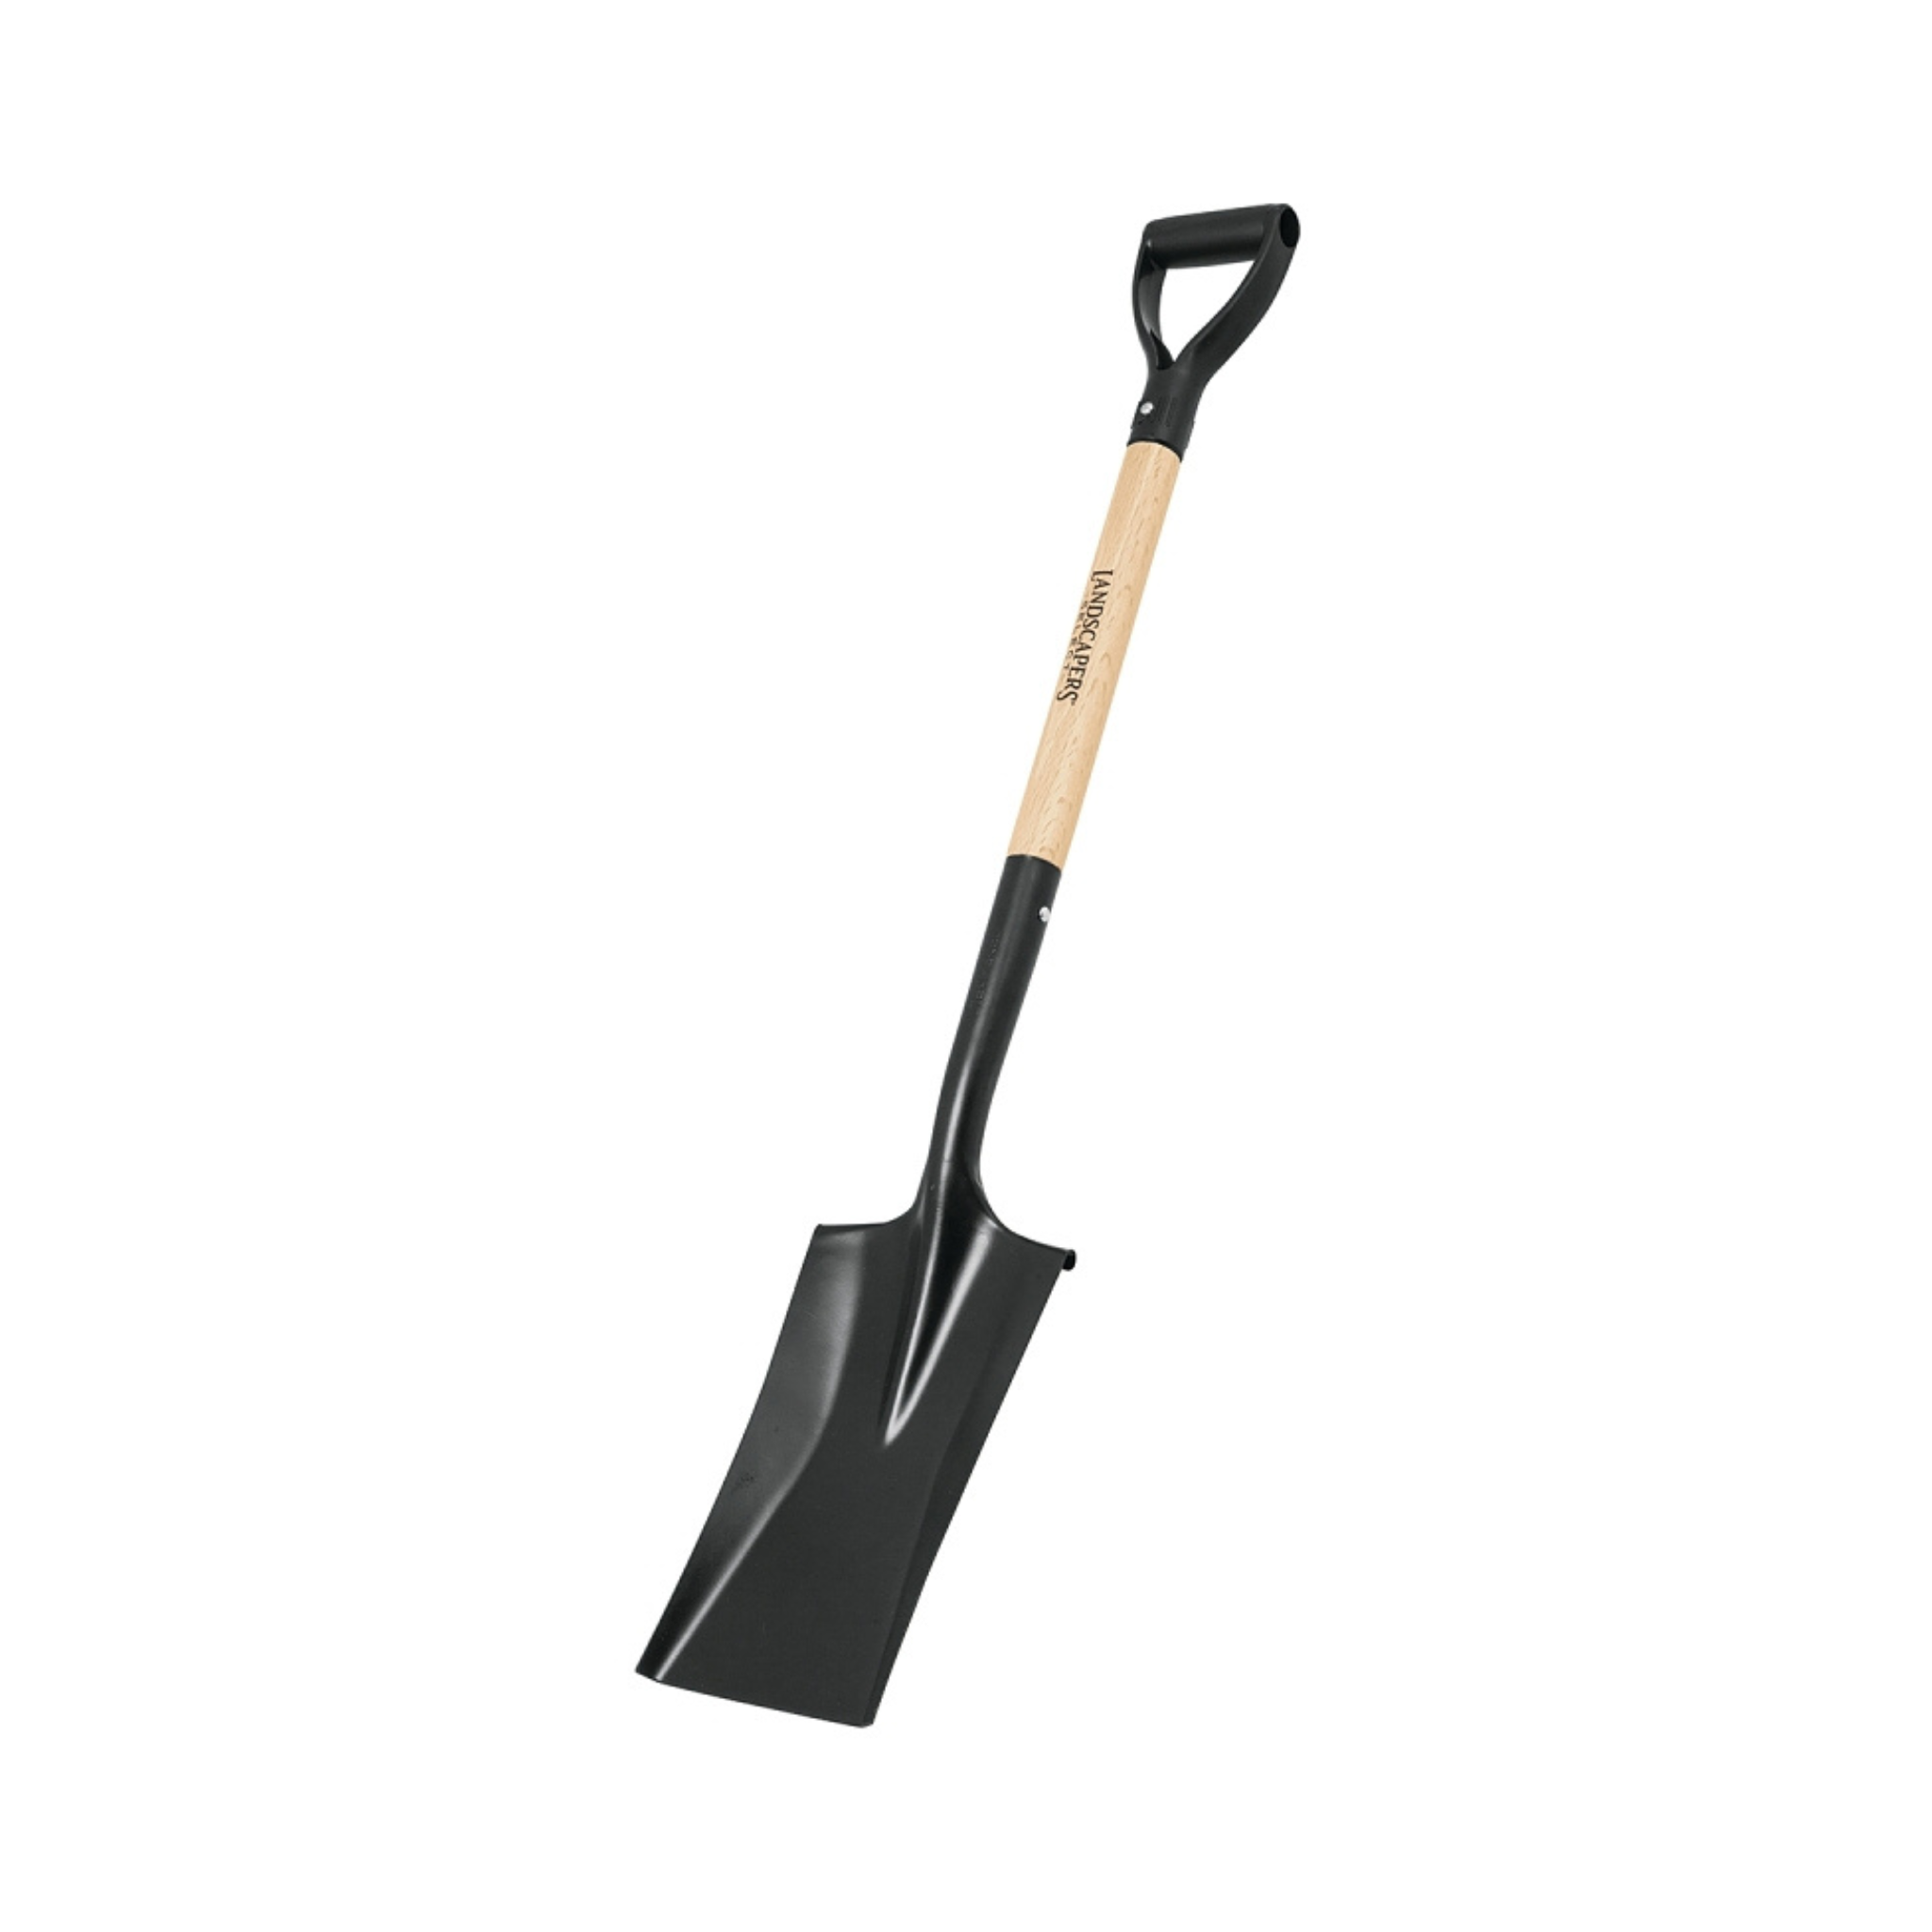 D-Handle Garden Spade Shovel